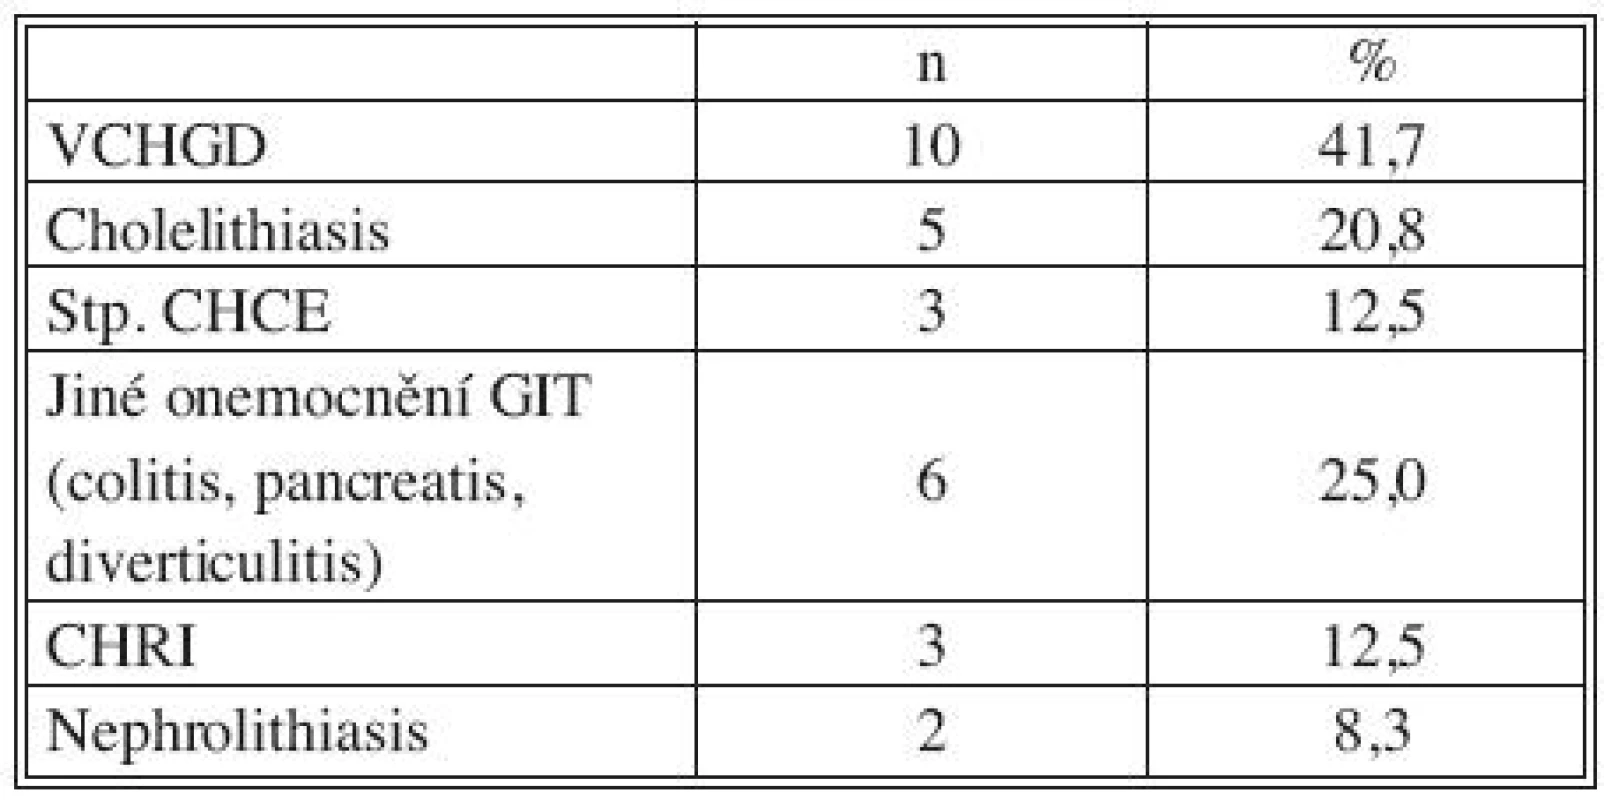 Přidružená onemocnění: GIT a urogenitální systém
Tab. 2. Associated disorders: GIT and urogenital system